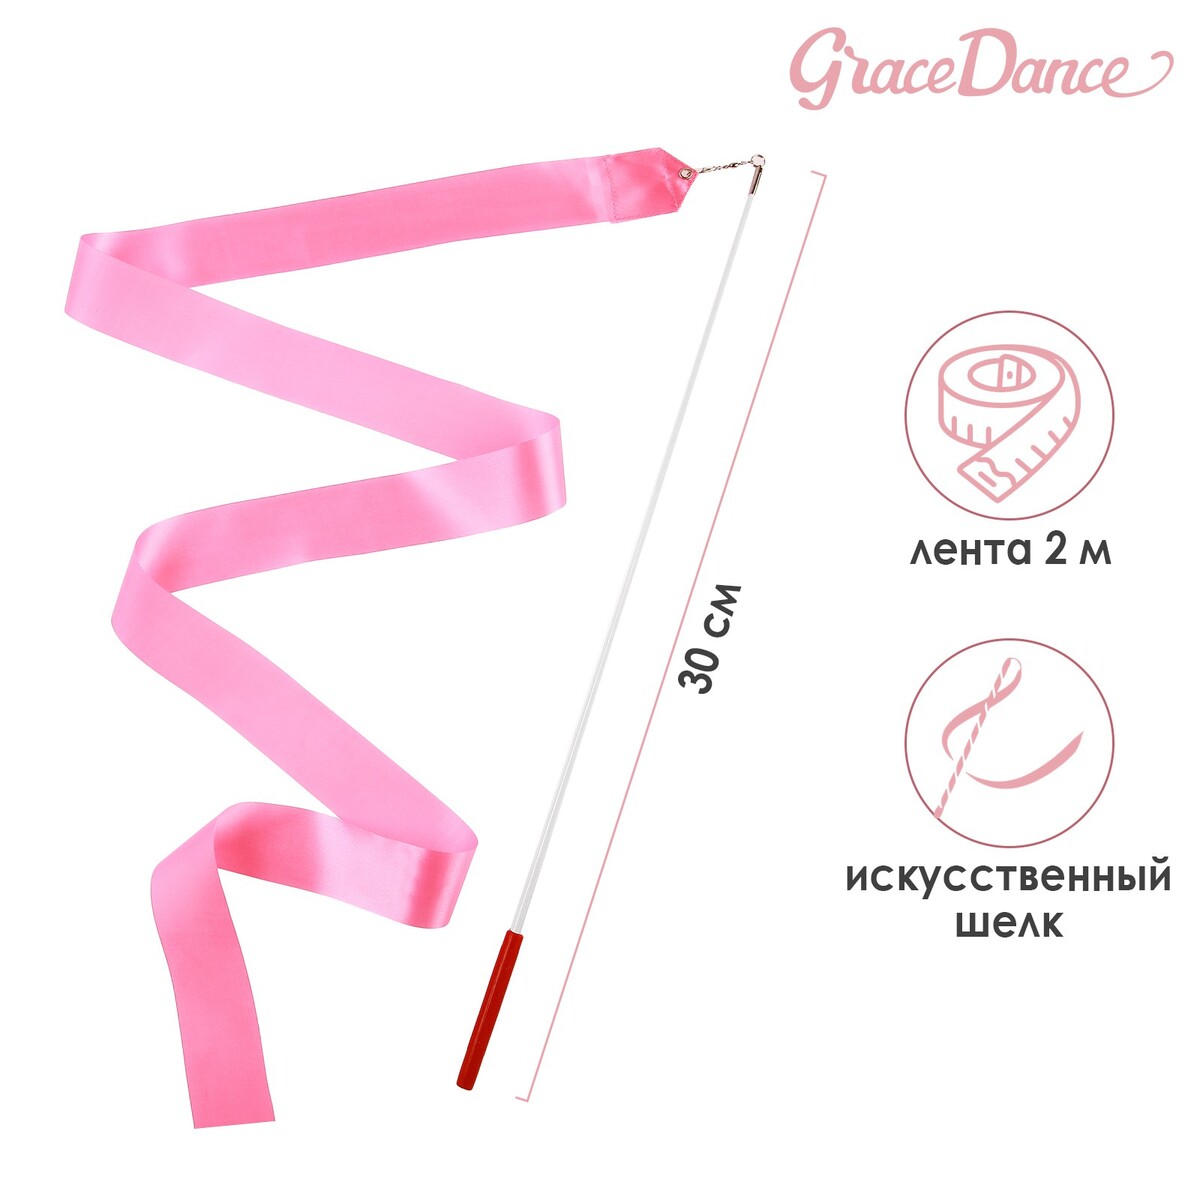 Лента для художественной гимнастики с палочкой grace dance, 2 м, цвет розовый лента гимнастическая с палочкой grace dance 2 м розовый